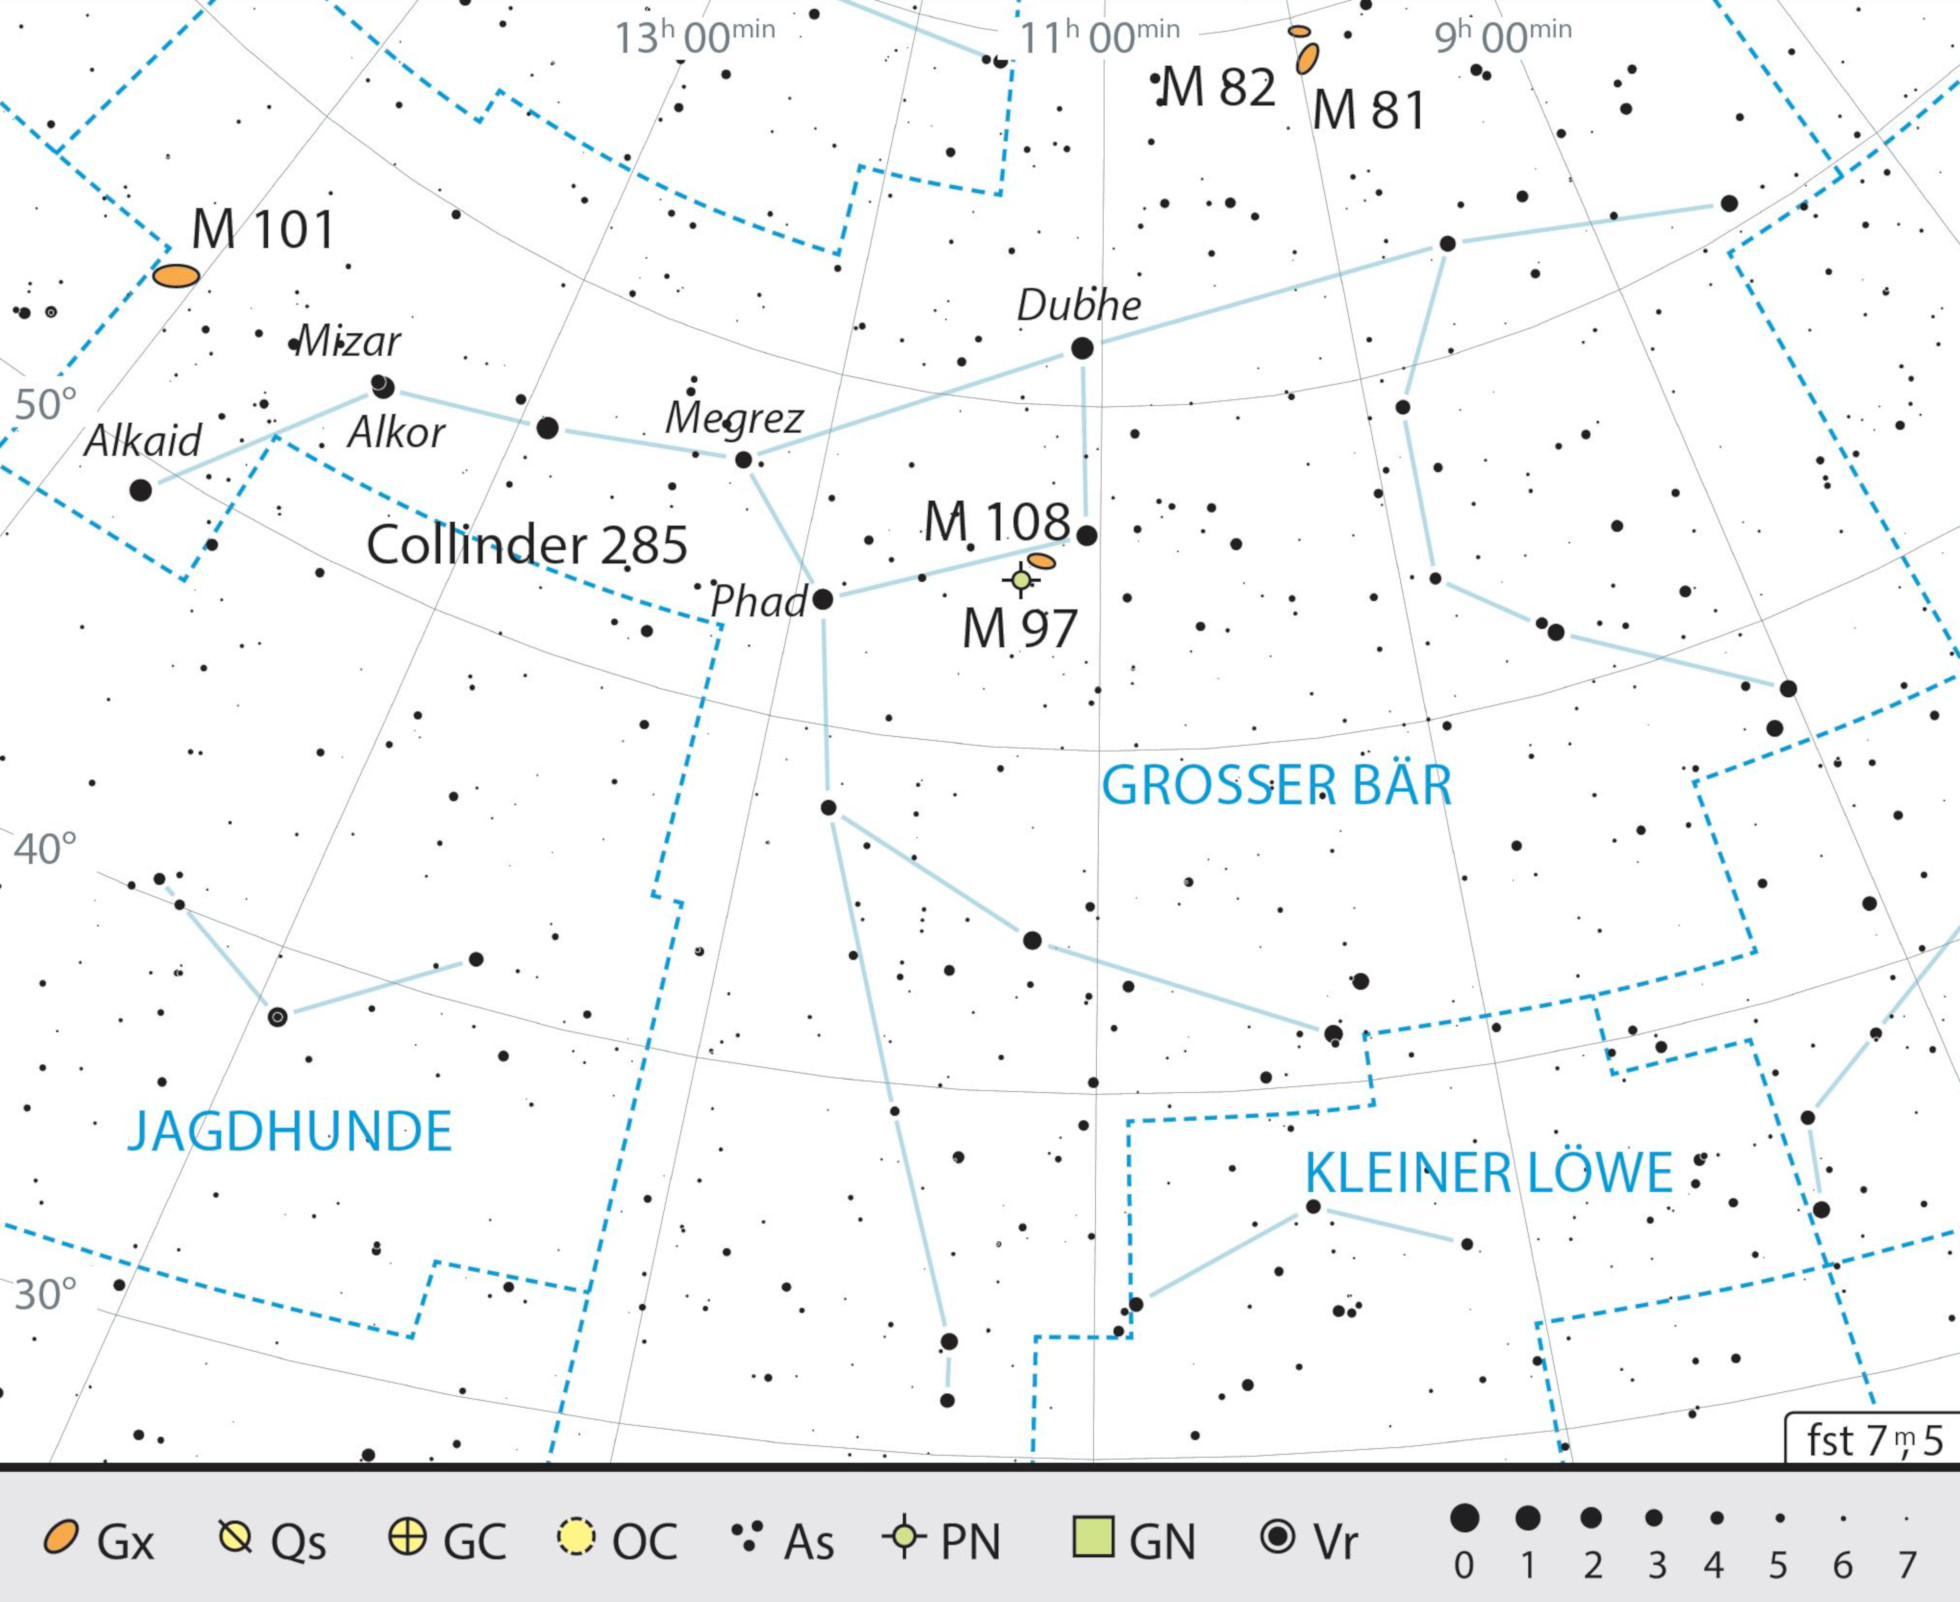 Mapa przeglądowa gwiazdozbioru Wielkiej Niedźwiedzicy z polecanymi celami obserwacyjnymi. J. Scholten